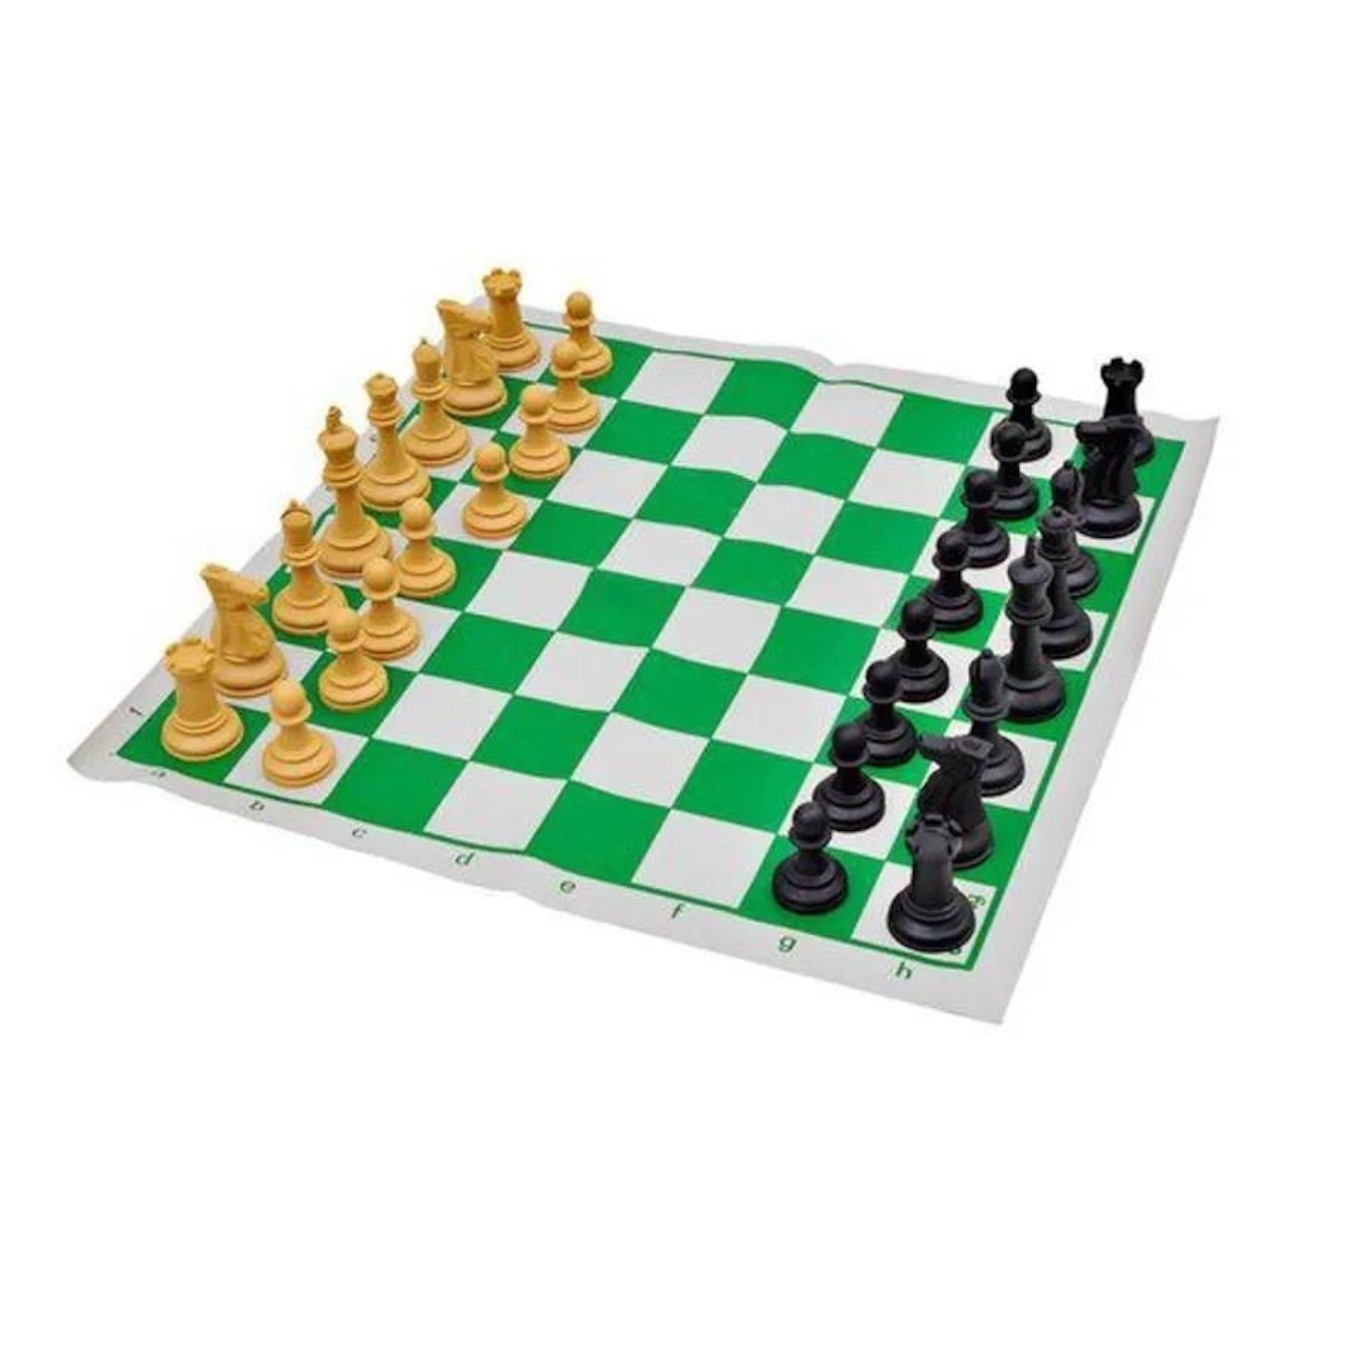 Curso de Xadrez! 13 CURSOS em 1 [DOMINE O JOGO] + 19 EXTRAS!